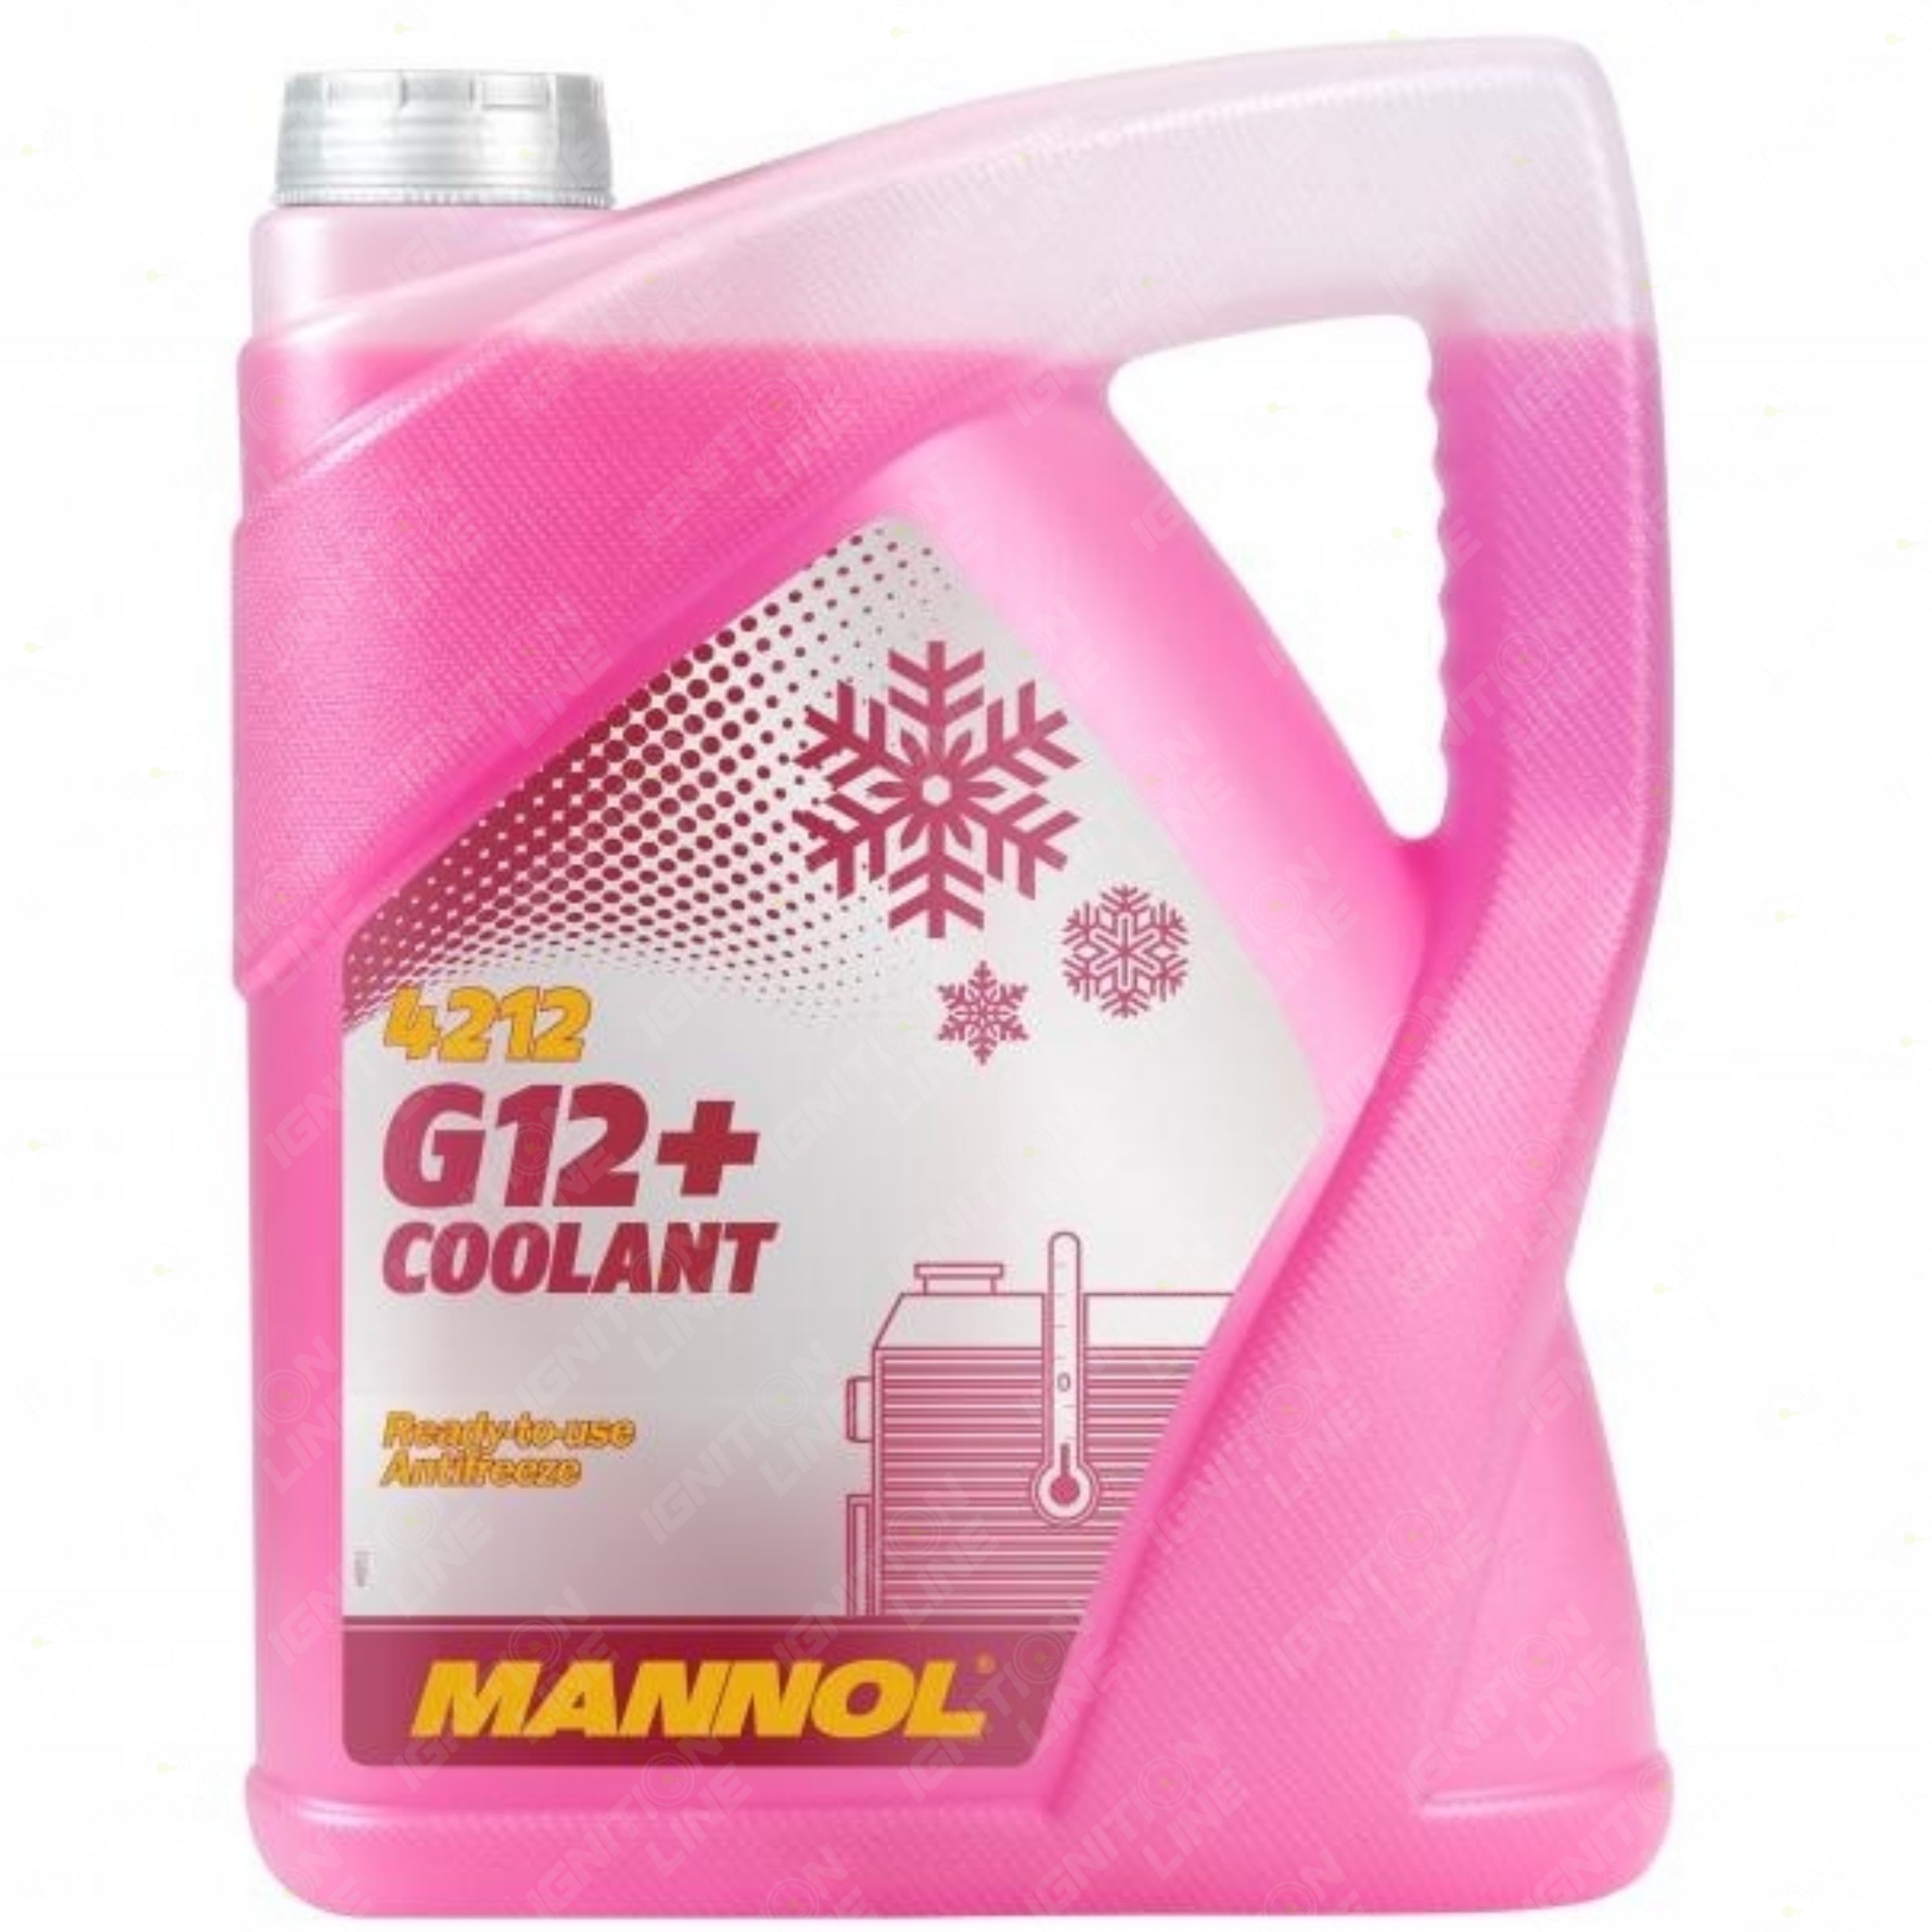 MANNOL Coolant G12+ 5 Litre